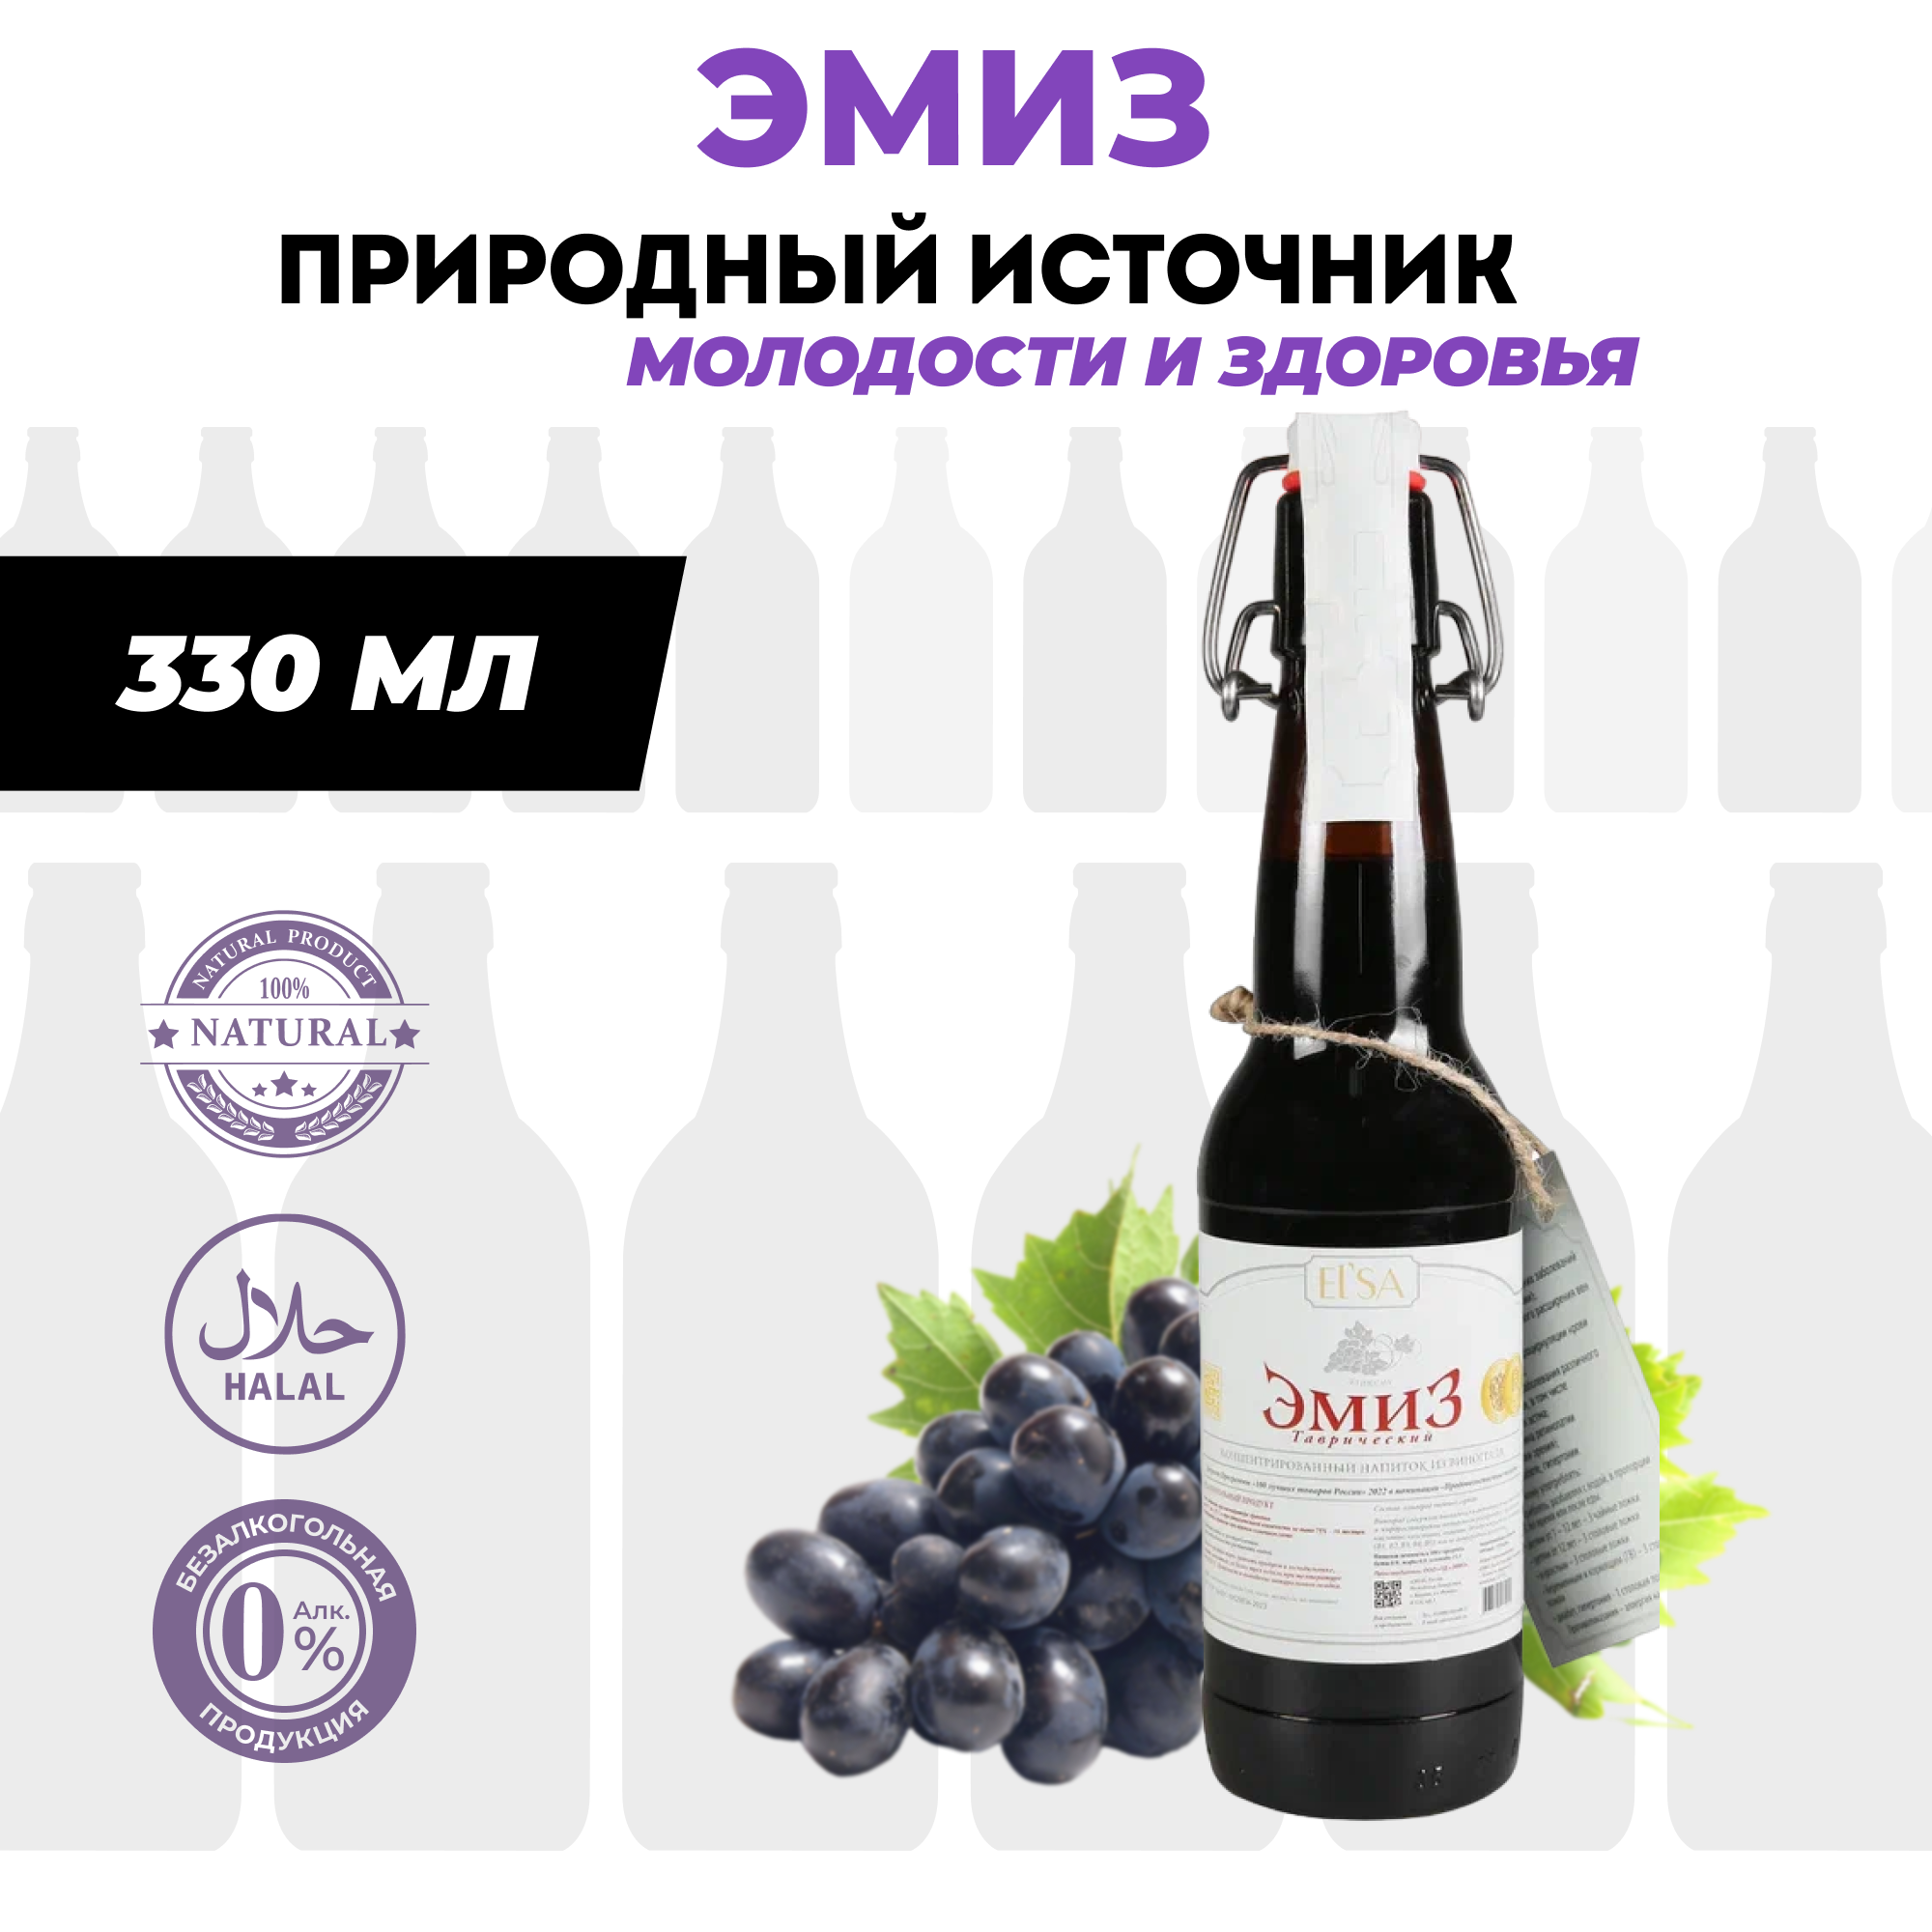 Виноградный эликсир эмиз Таврический 330 мл